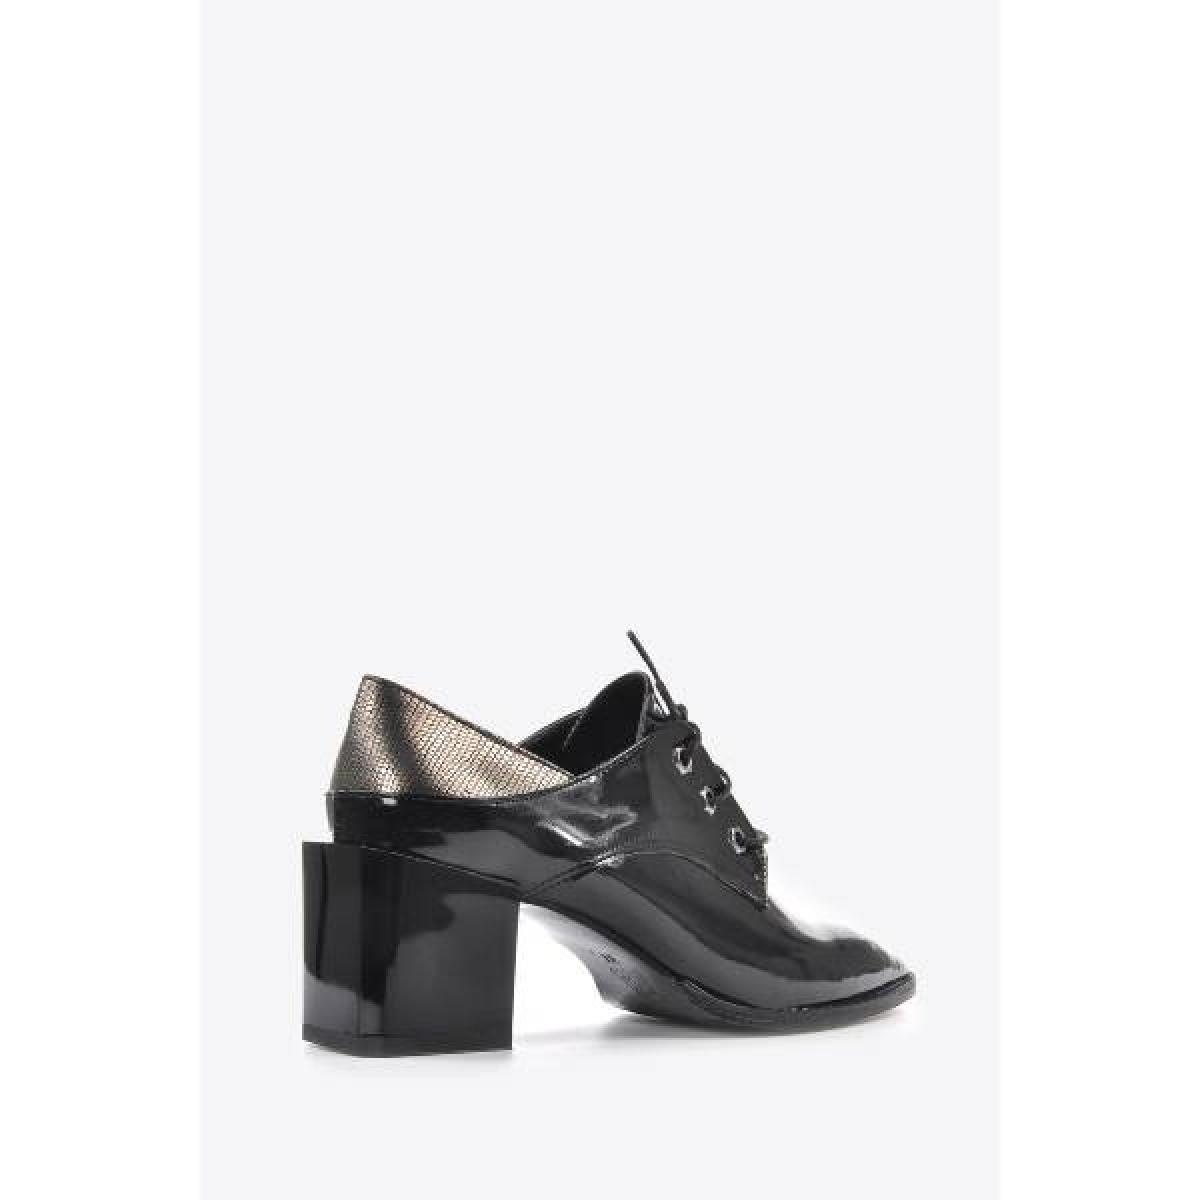 Flo Kadın  Siyah Rugan Klasik Topuklu Ayakkabı VZN20-011K. 4